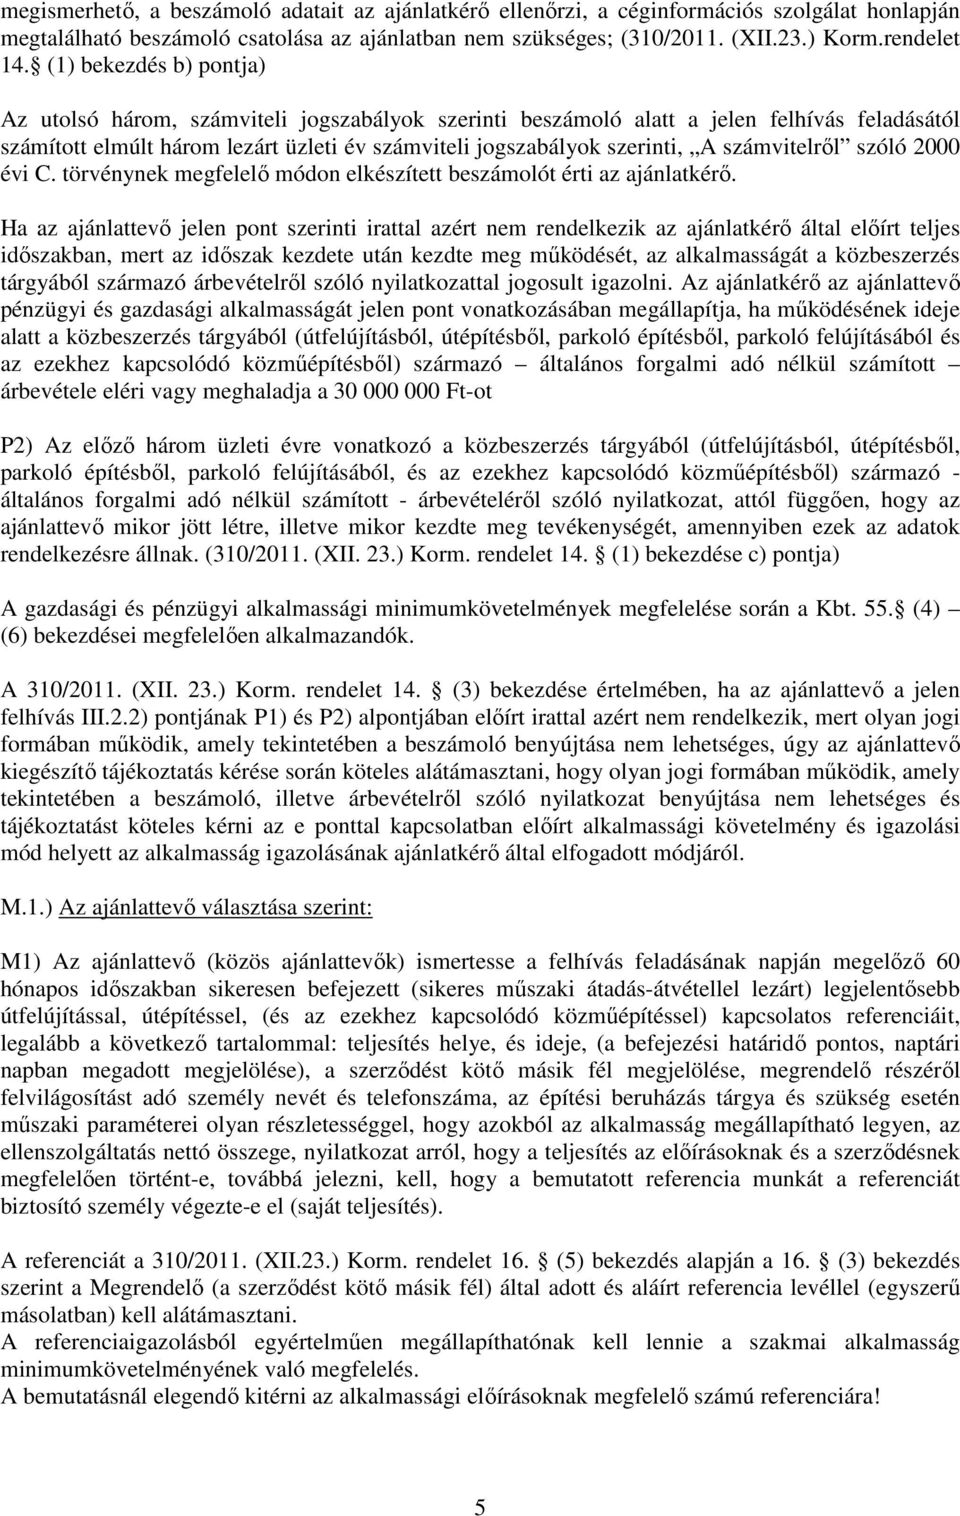 számvitelrıl szóló 2000 évi C. törvénynek megfelelı módon elkészített beszámolót érti az ajánlatkérı.